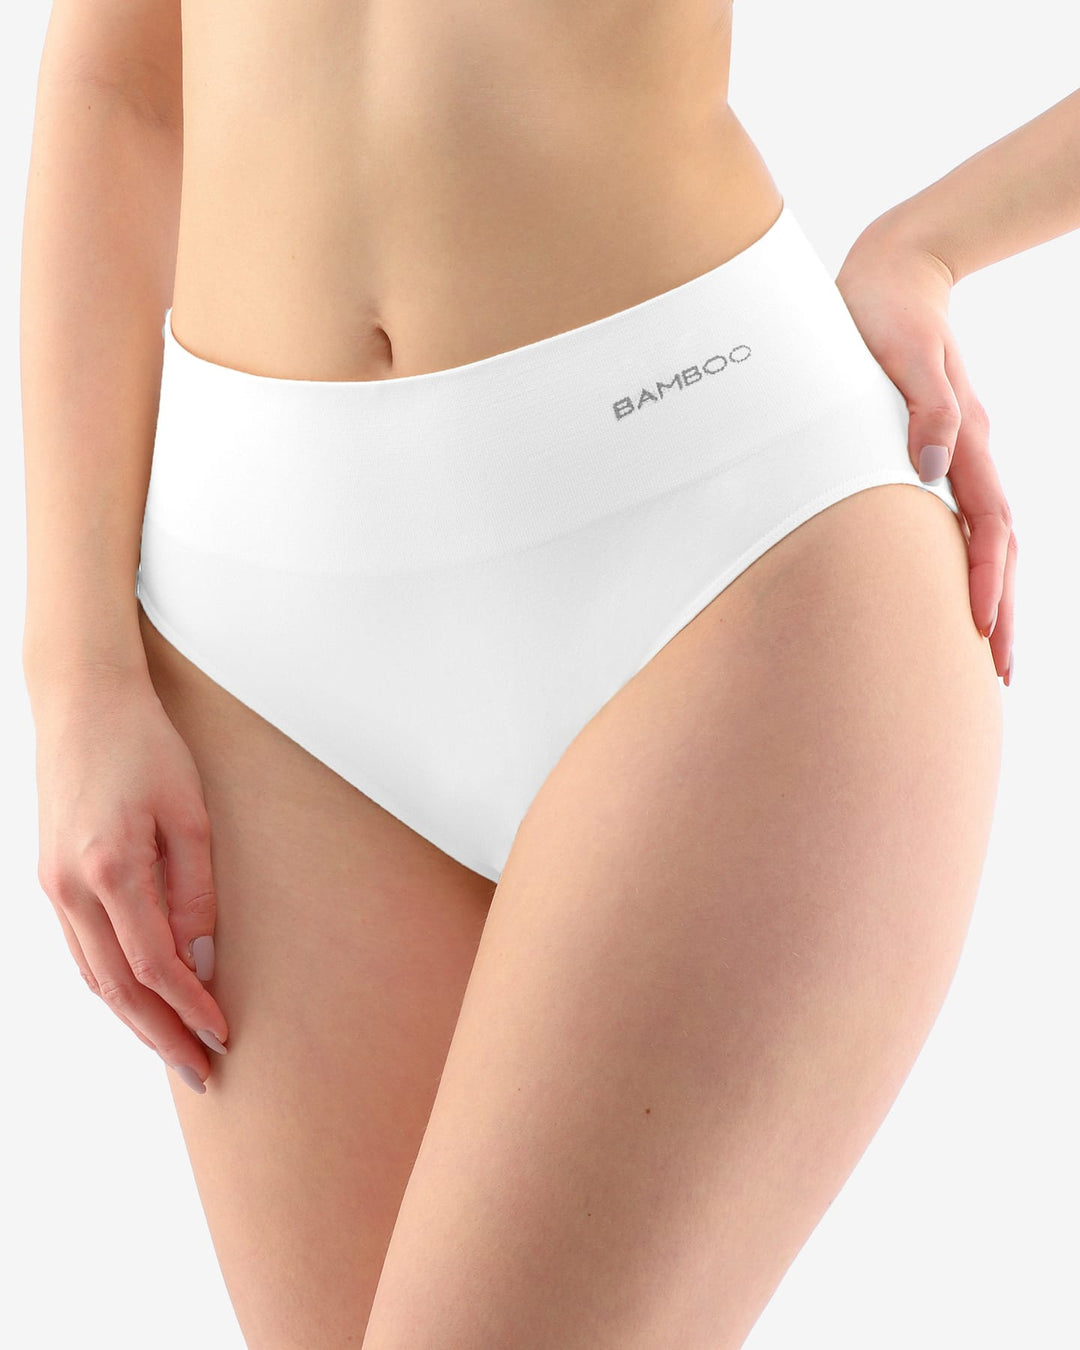 Hema Women Underwear Rlc Brief Folded Waistband, M, White price in